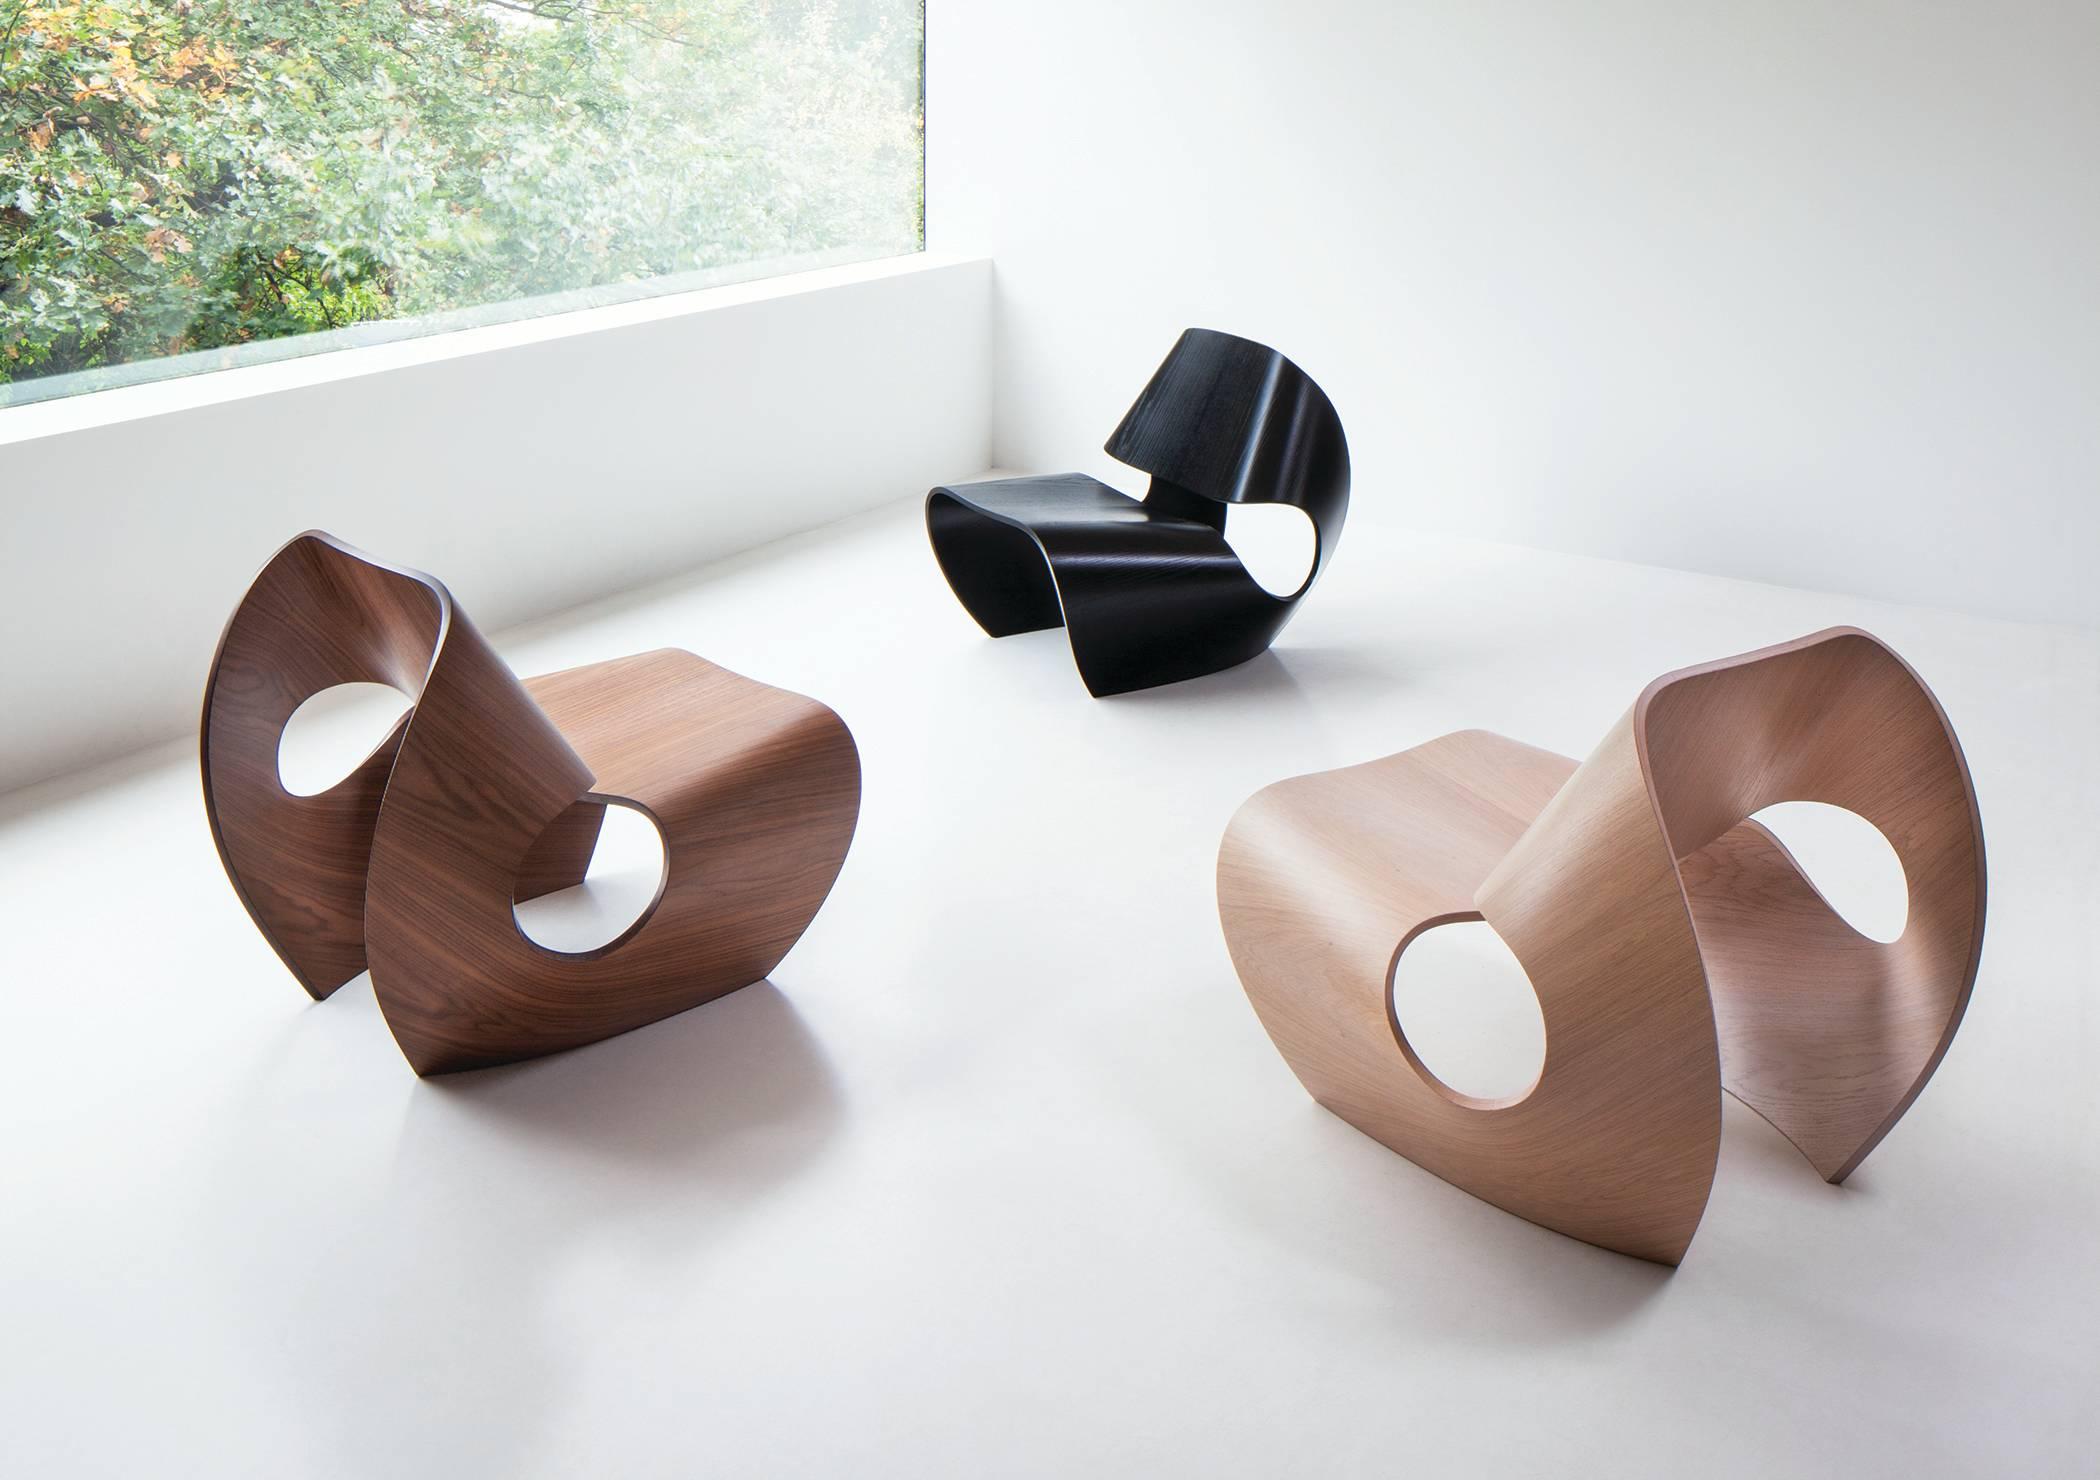 La chaise Cowrie contemporaine est une chaise facile solide comme le roc, inspirée par les lignes concaves des coquillages. Les formes curvilignes sont le résultat d'un processus de recherche et d'innovation approfondi qui jette un pont entre le